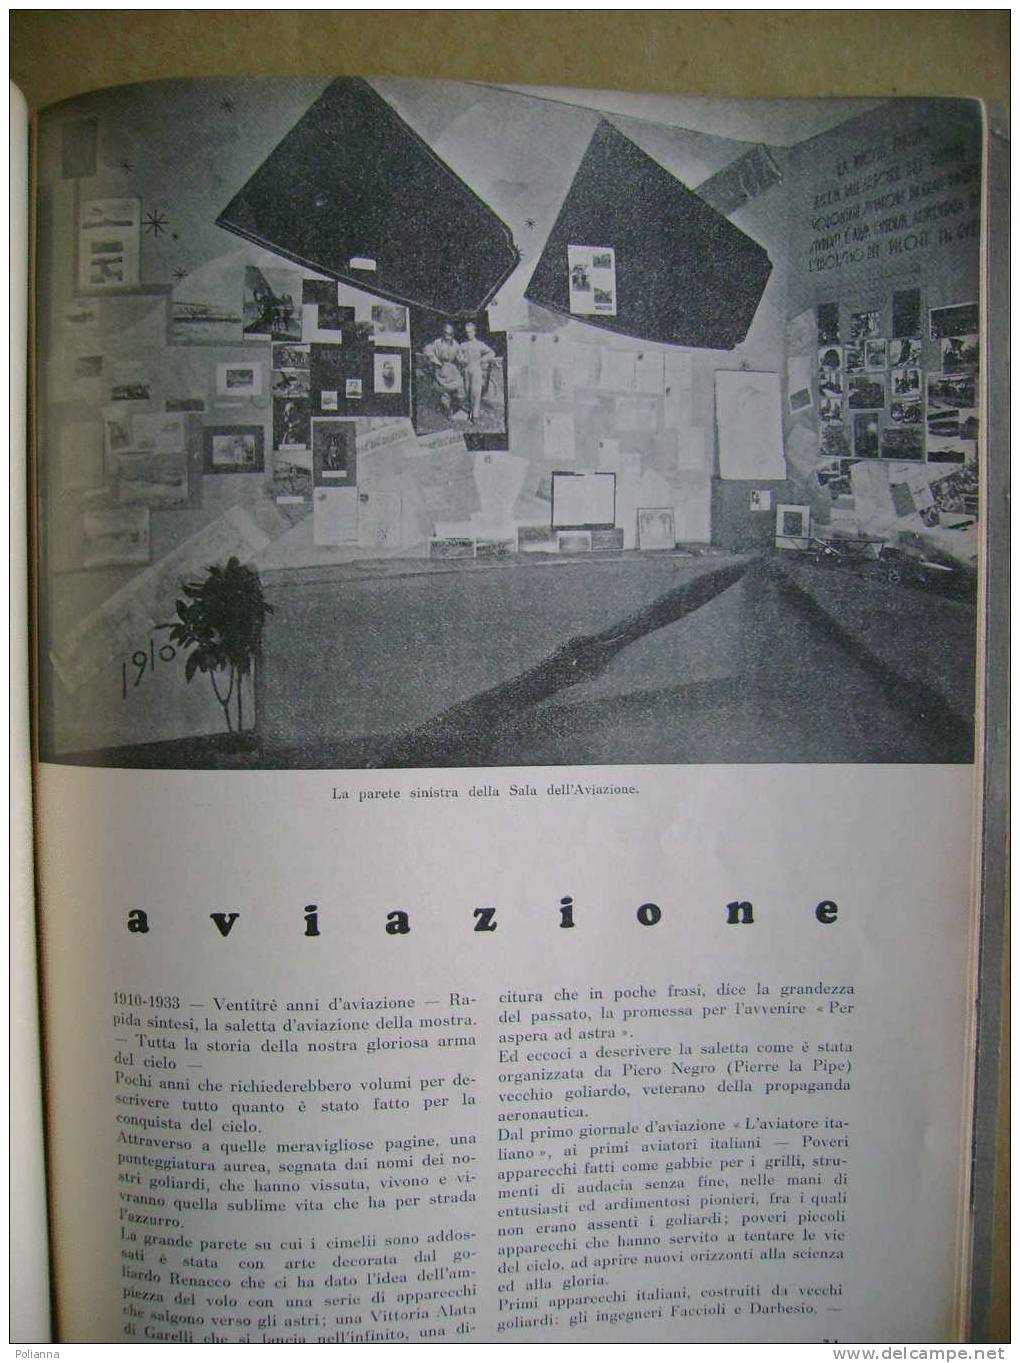 PAF/46 Curreli DENTRO DI NOI LA NEBBIA Approdo 1972 / Piemontese - Disegni Di Eugenio Comencini - Poésie